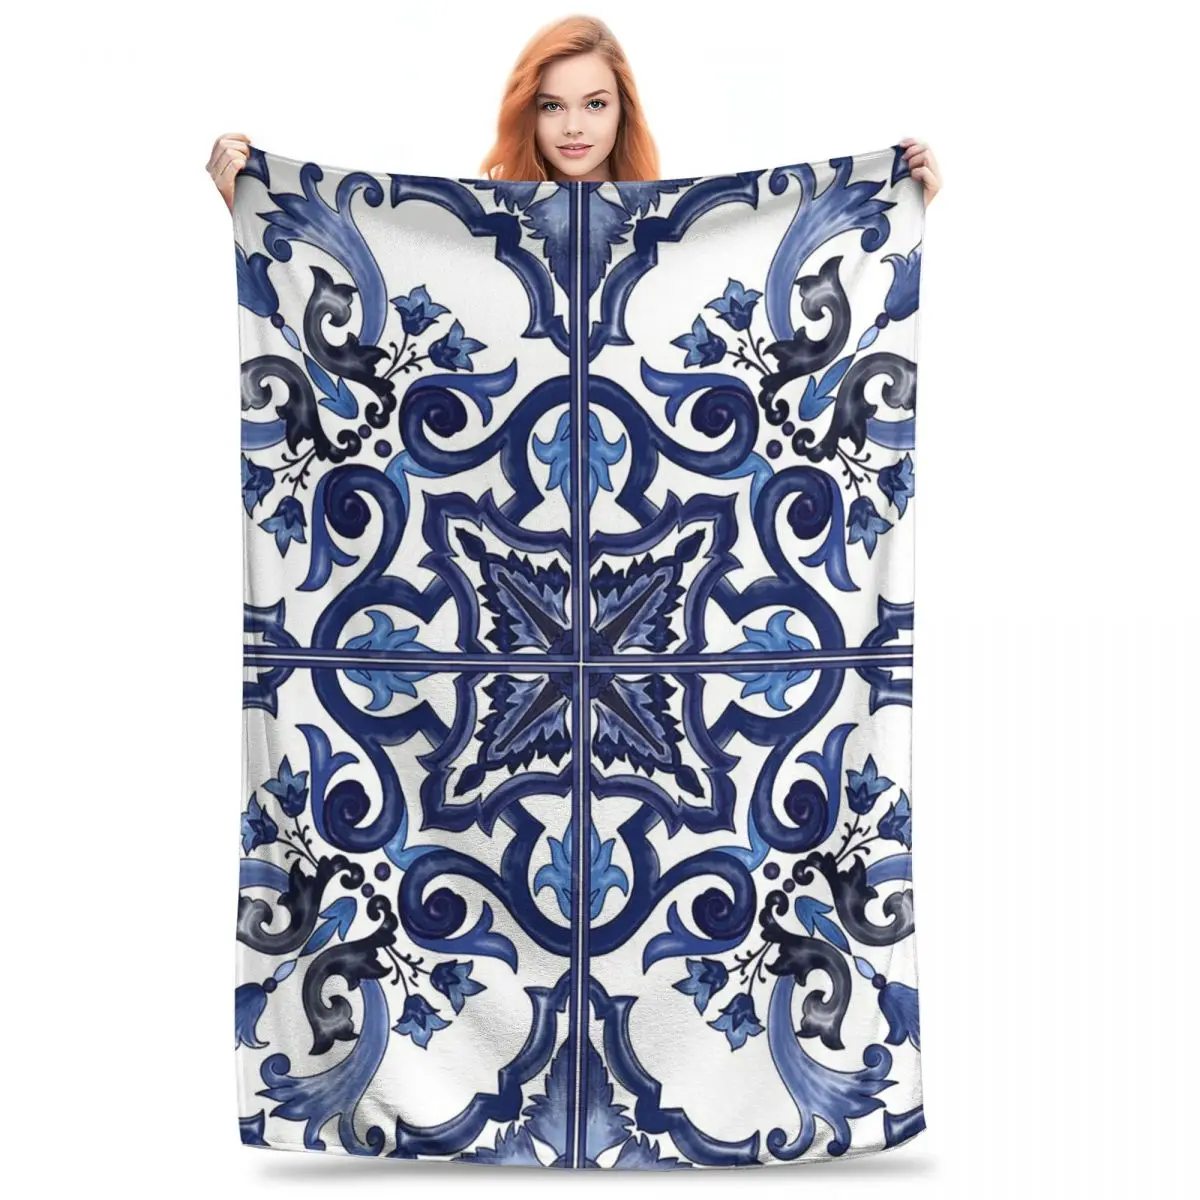 

Синее декоративное цветочное одеяло в средиземноморском сицилийском стиле, флисовое покрывало для дивана, покрывало для путешествий